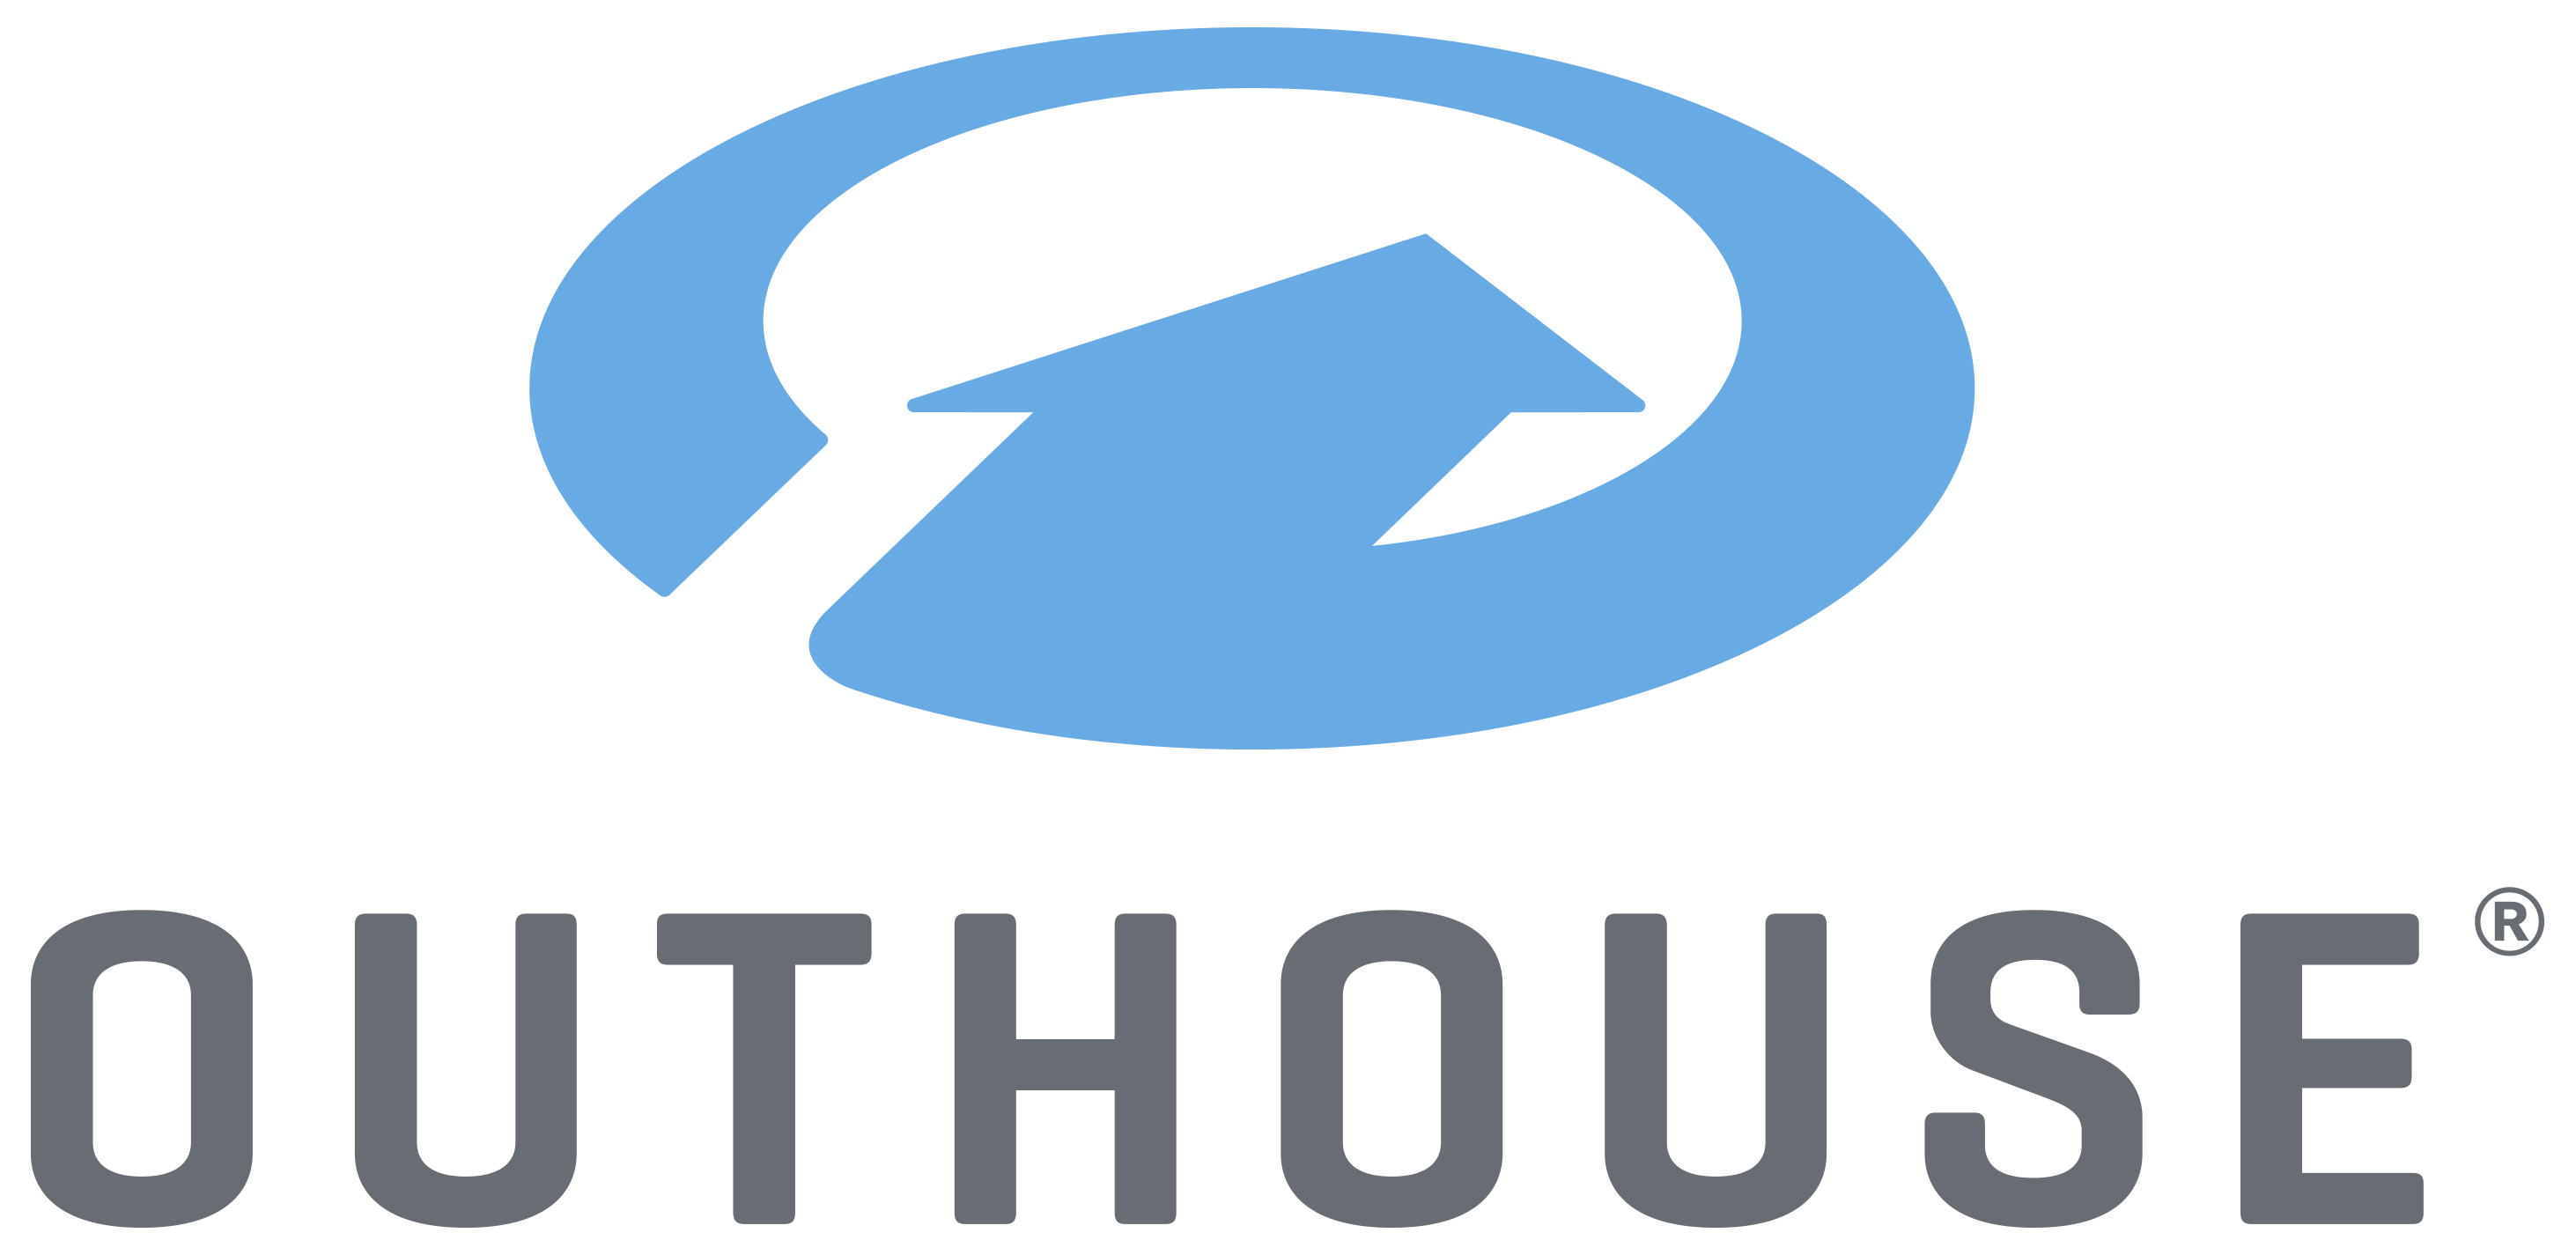 Outhouse Logo